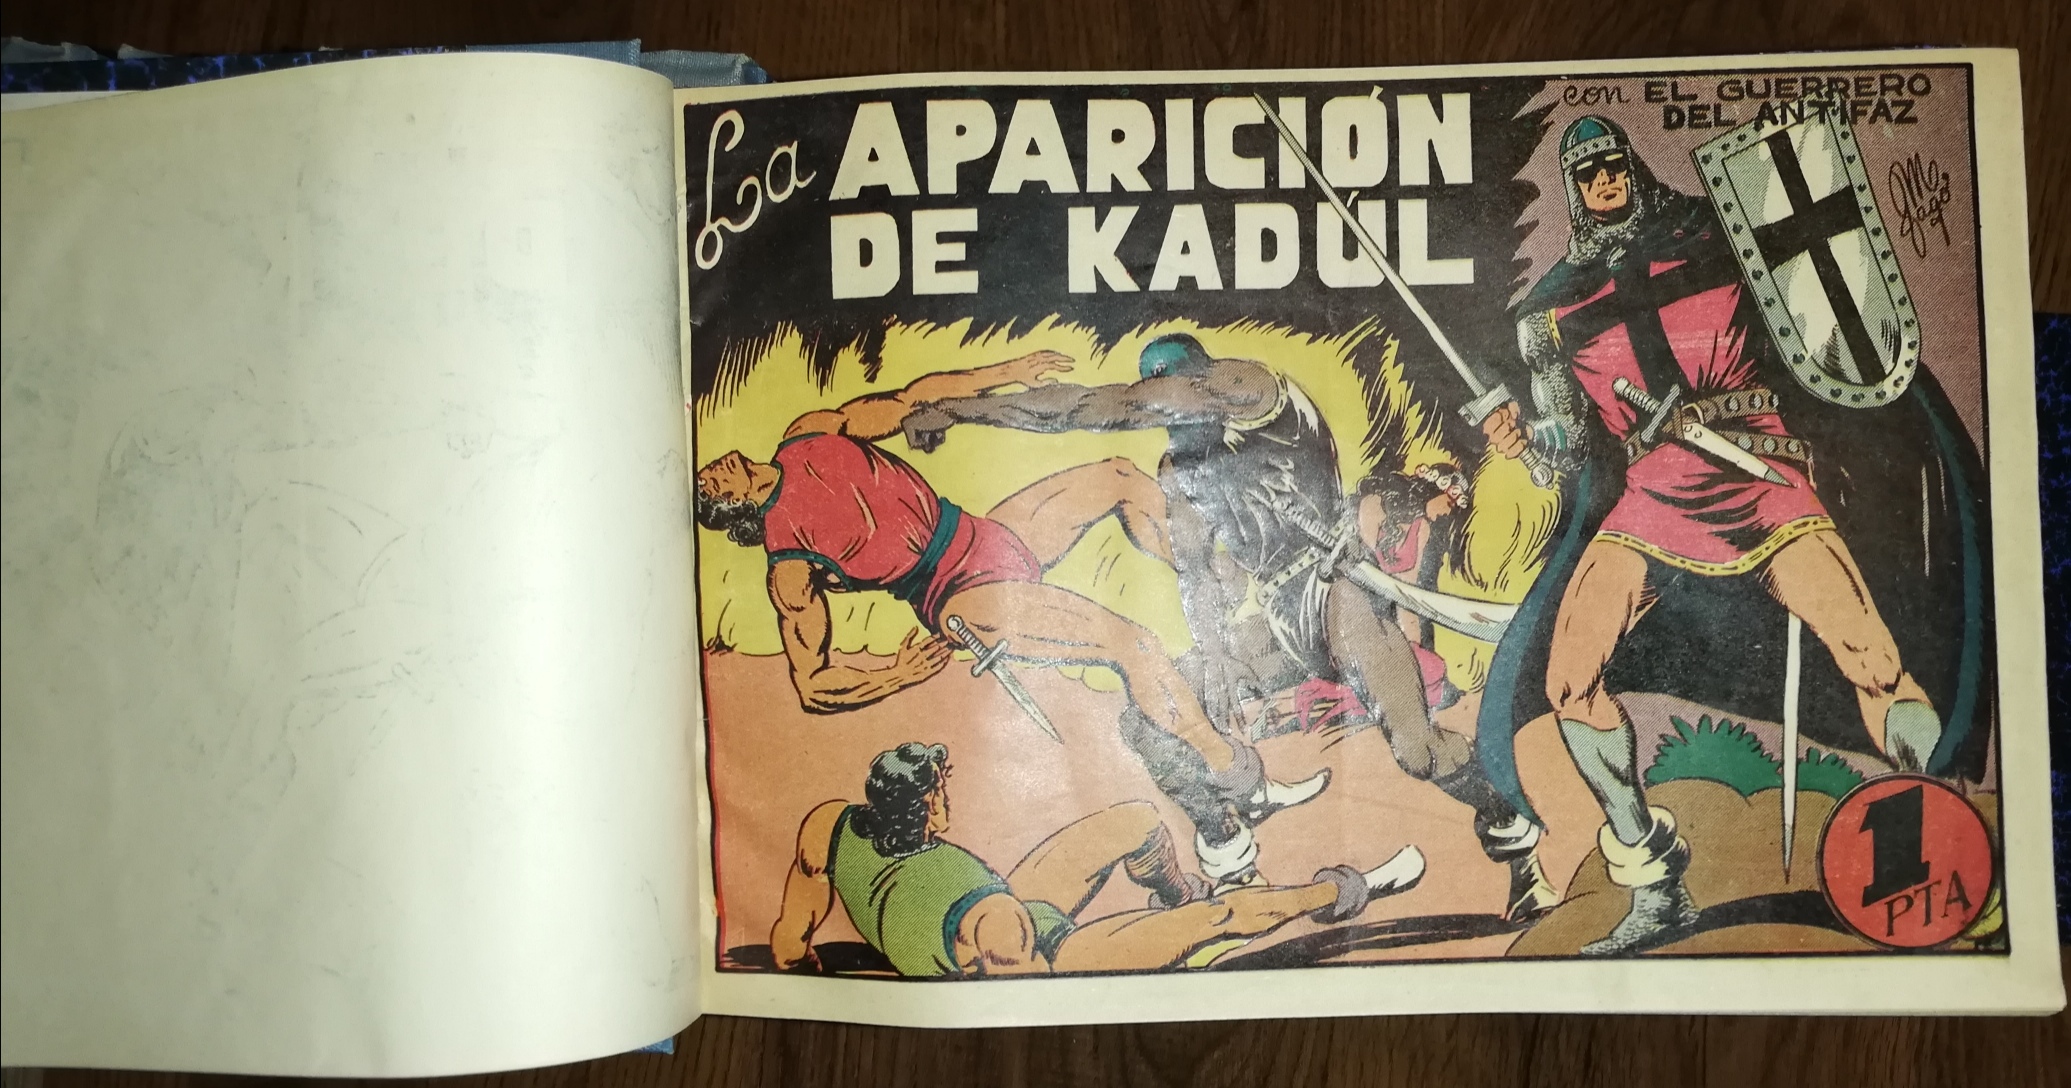 El Guerrero del Antifaz. Valenciana 1944. Colección Completa, 668 ejemplares encuadernada en 16 tomos